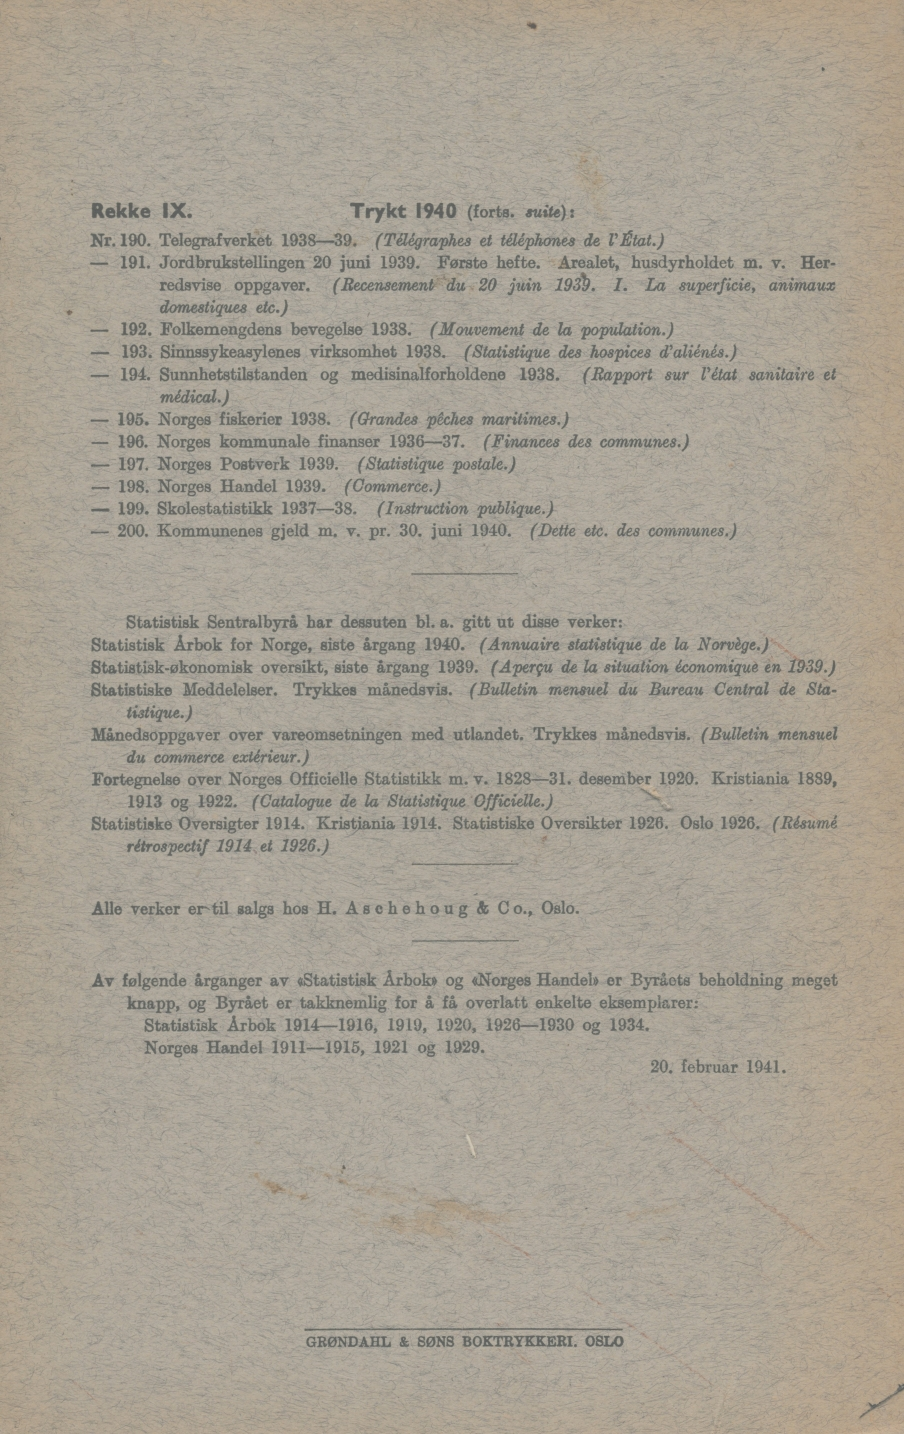 Rekke IX. Trykt 1940 (forts. suite): Nr. 190. Telegrafverket 1938-39. (Télégraphes et téléphones de l'état.) - 191. Jordbrnkstellingen 20 juni 1939. Første hefte. Arealet, husdyrholdet m. v.